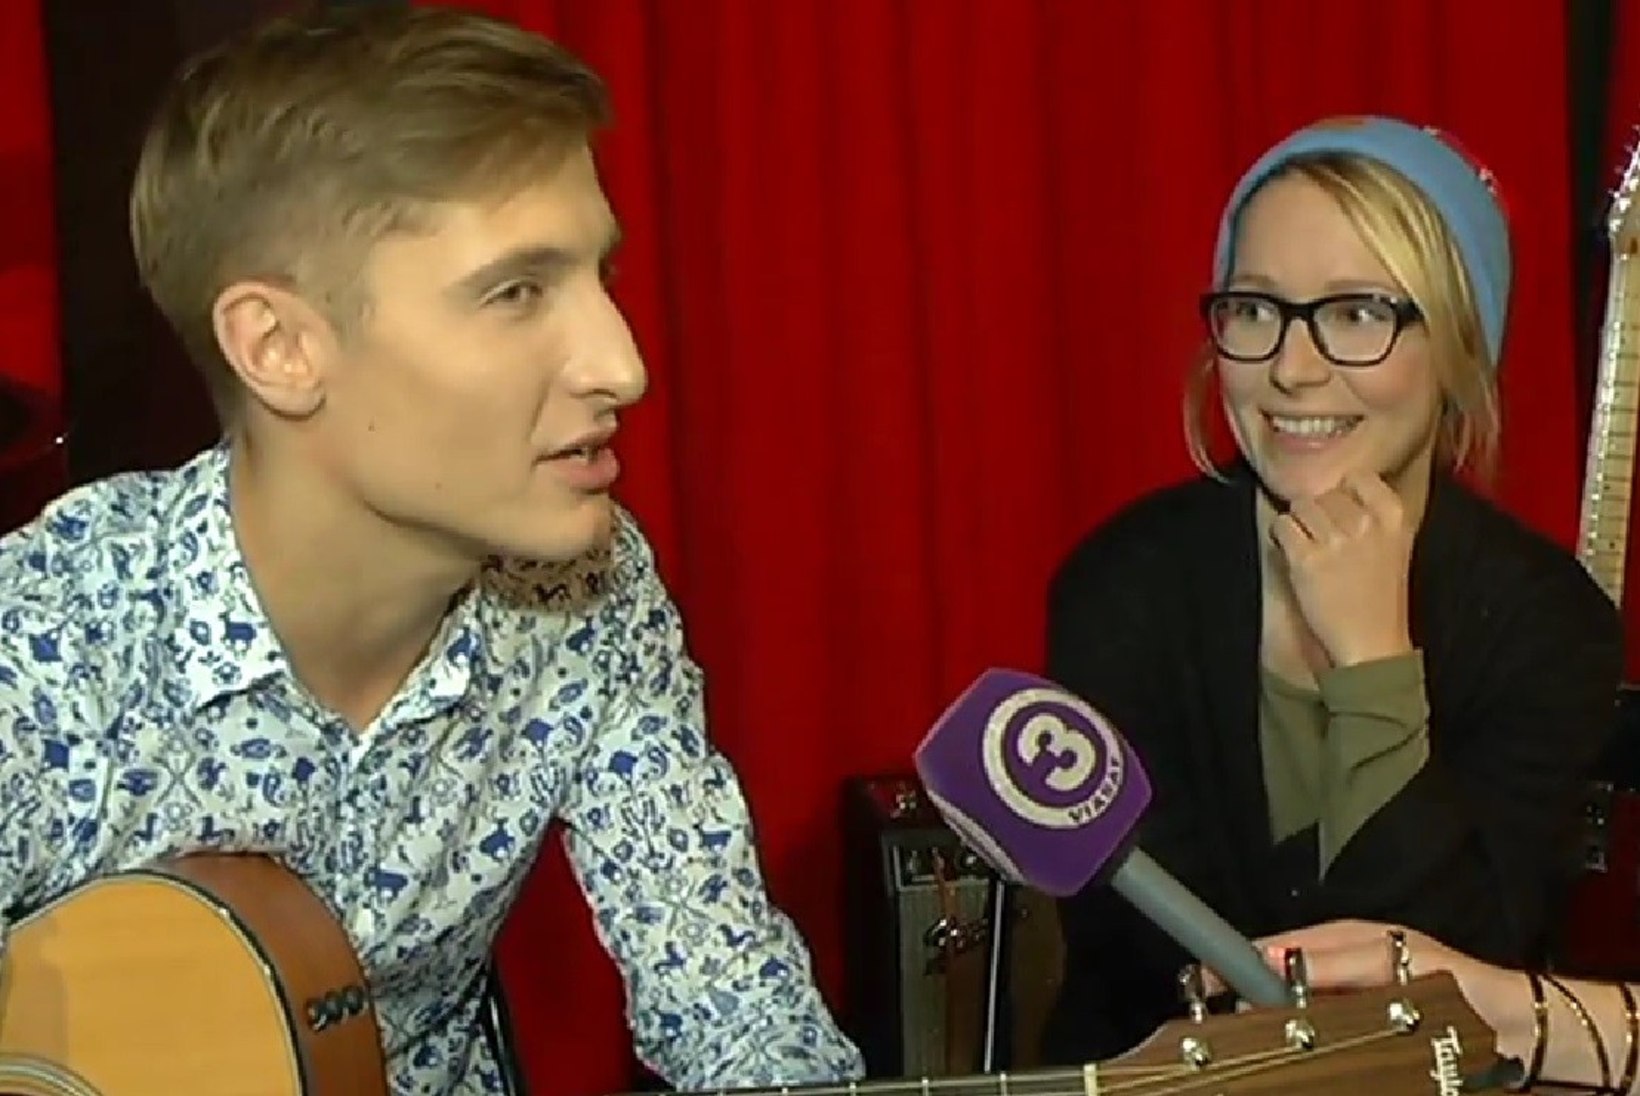 TV3 VIDEO: Taukar läheb koos Lennaga oma esimesele jõulutuurile